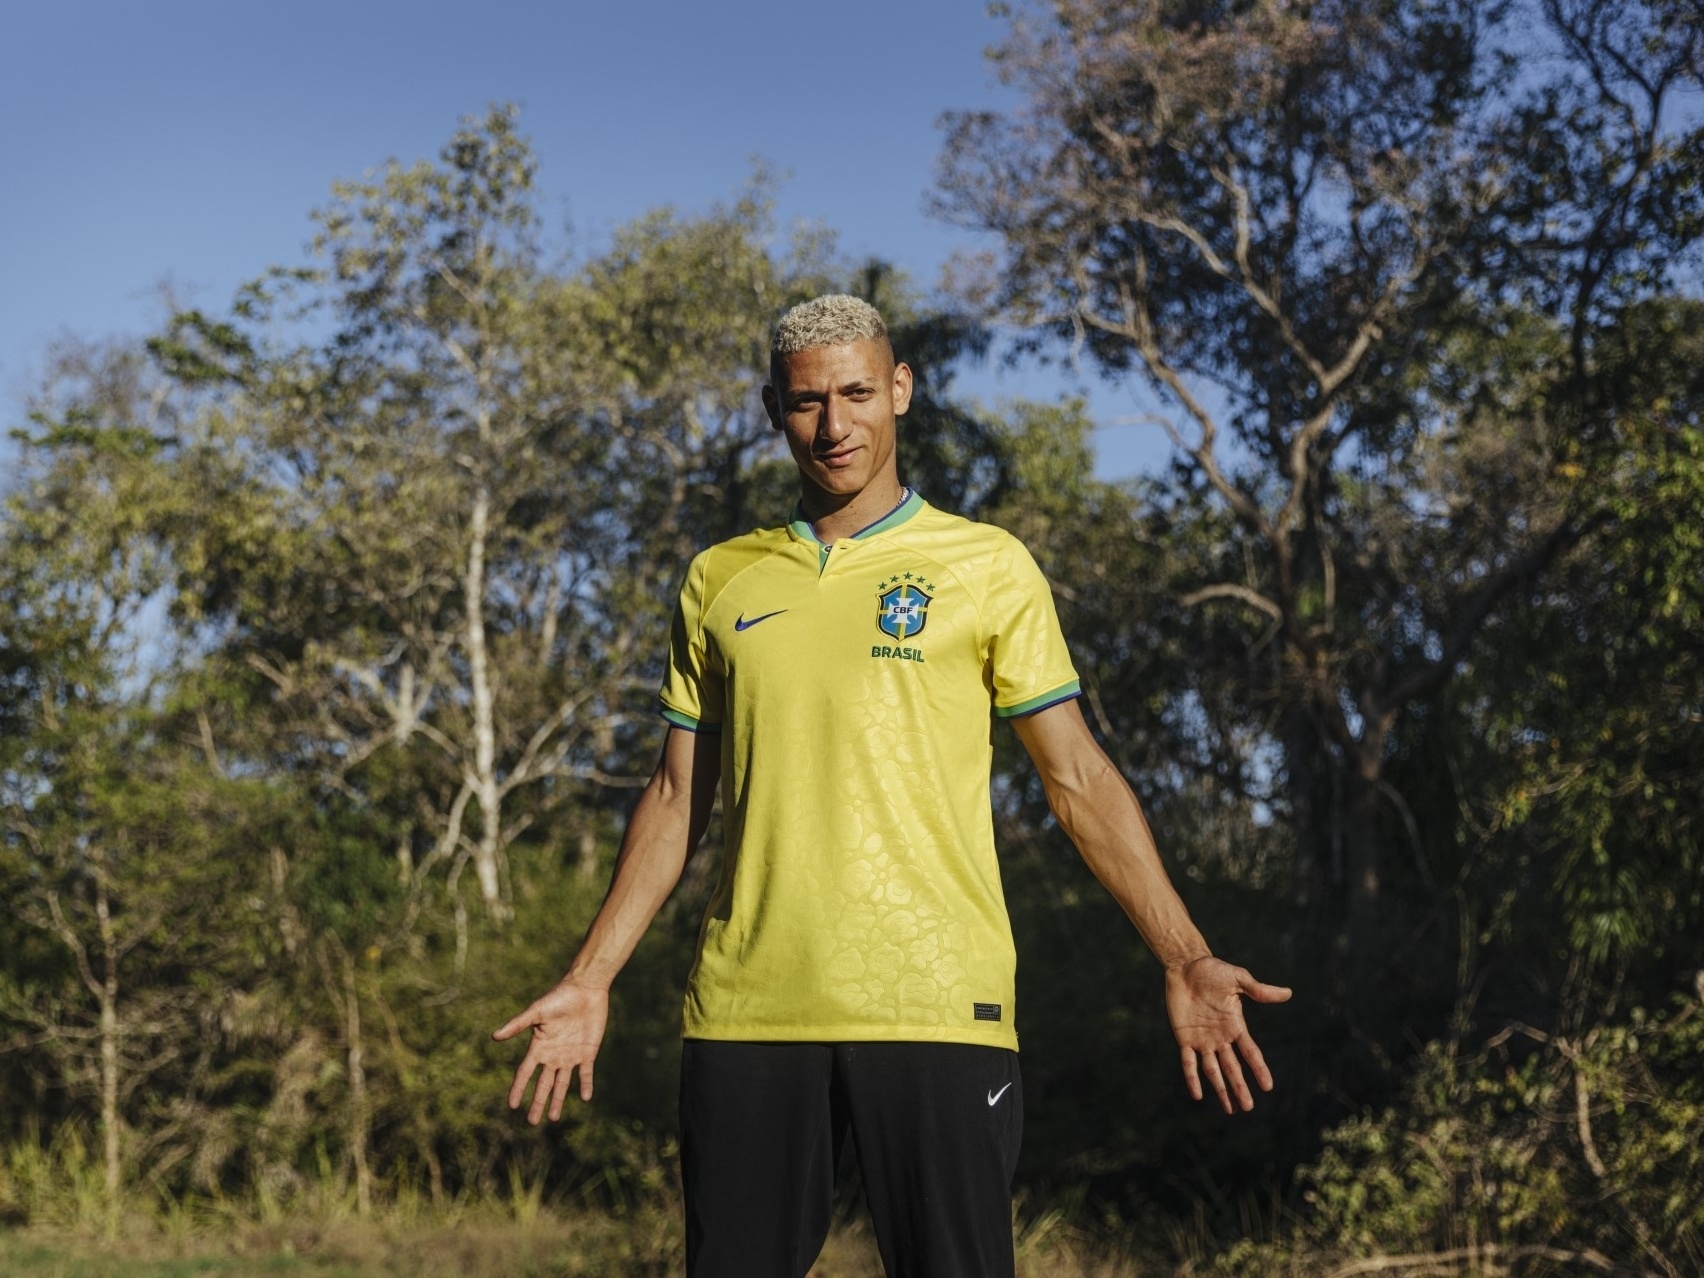 Nike lança novas camisas da seleção brasileira em homenagem à Copa de 70 -  08/11/2020 - UOL Esporte